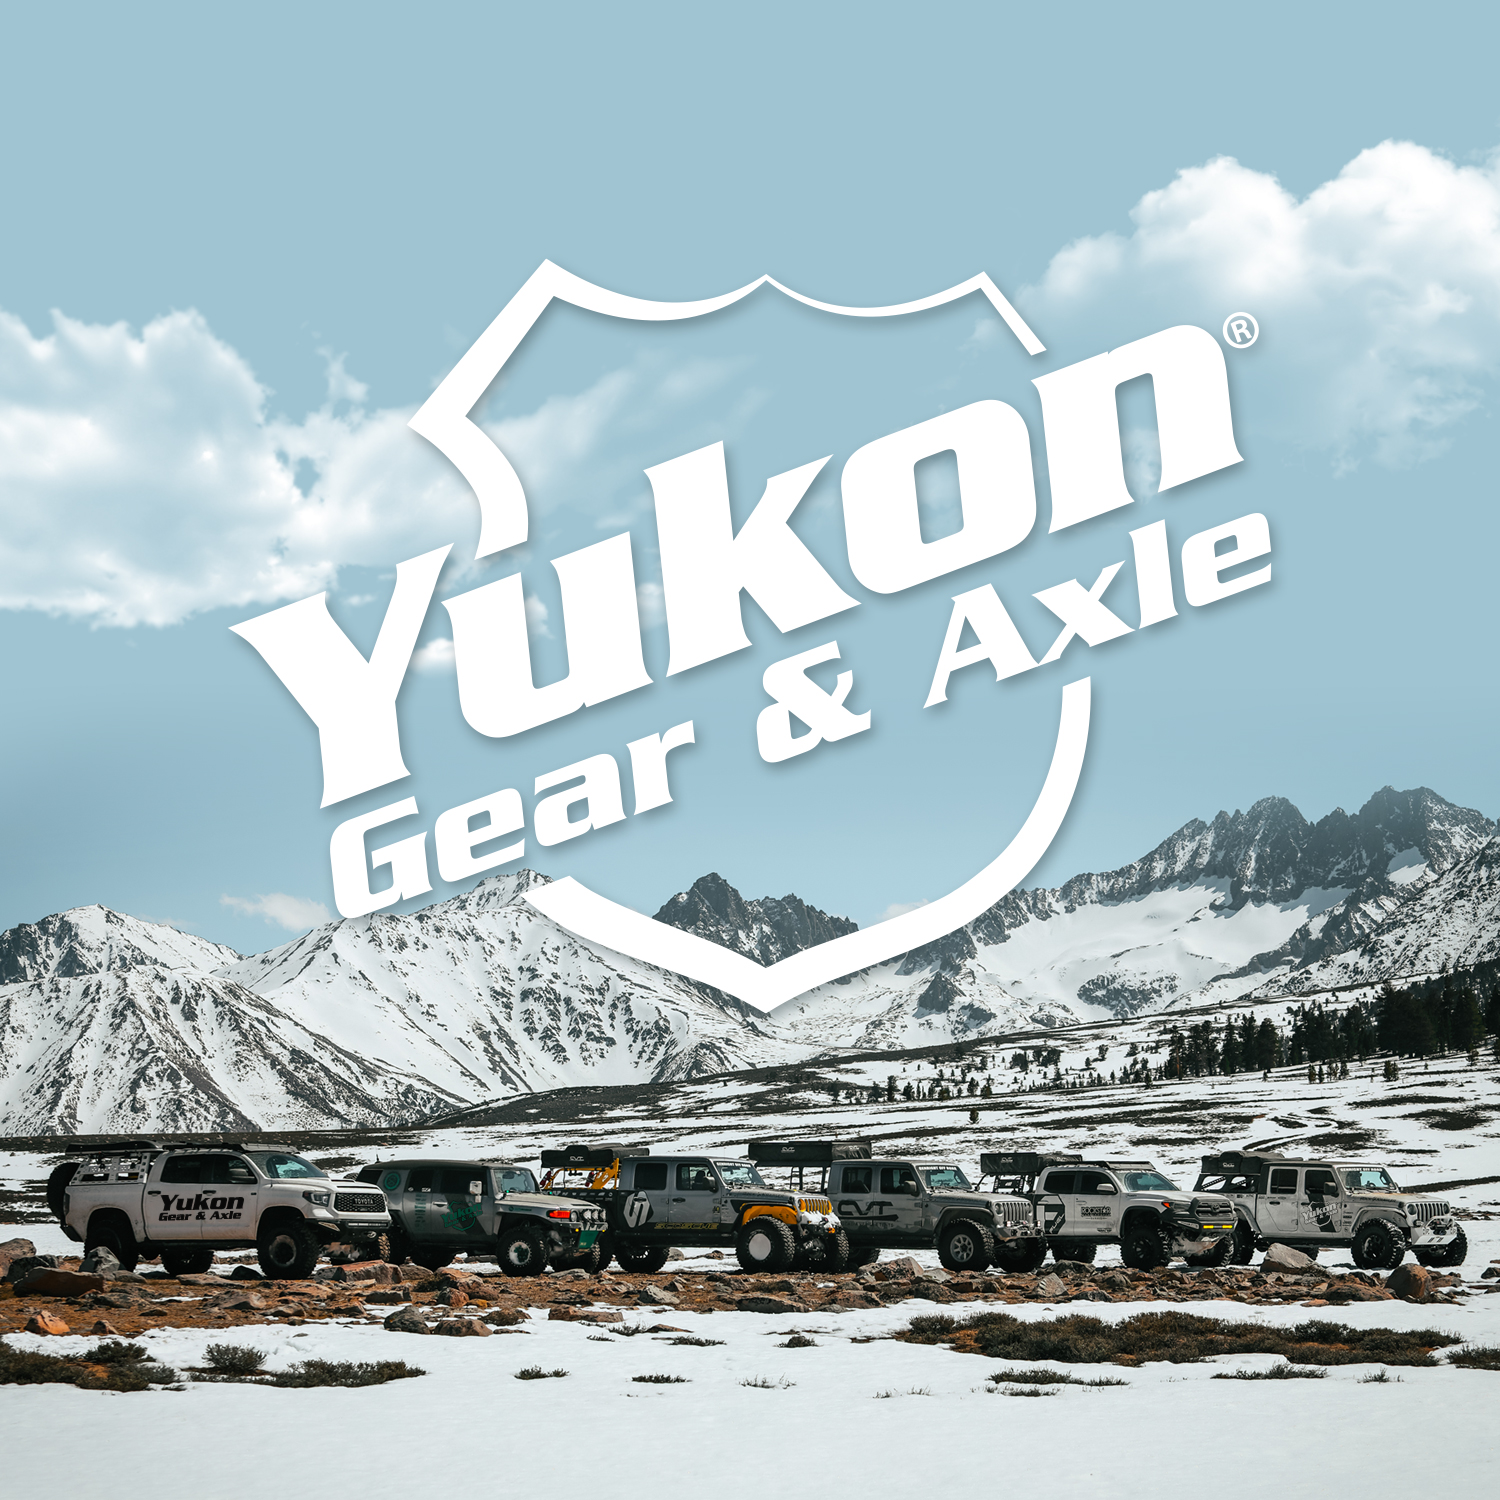 Yukon ring & pinion set, Toyota 8", high pinion in reverse, w/yoke kit, 4.88 